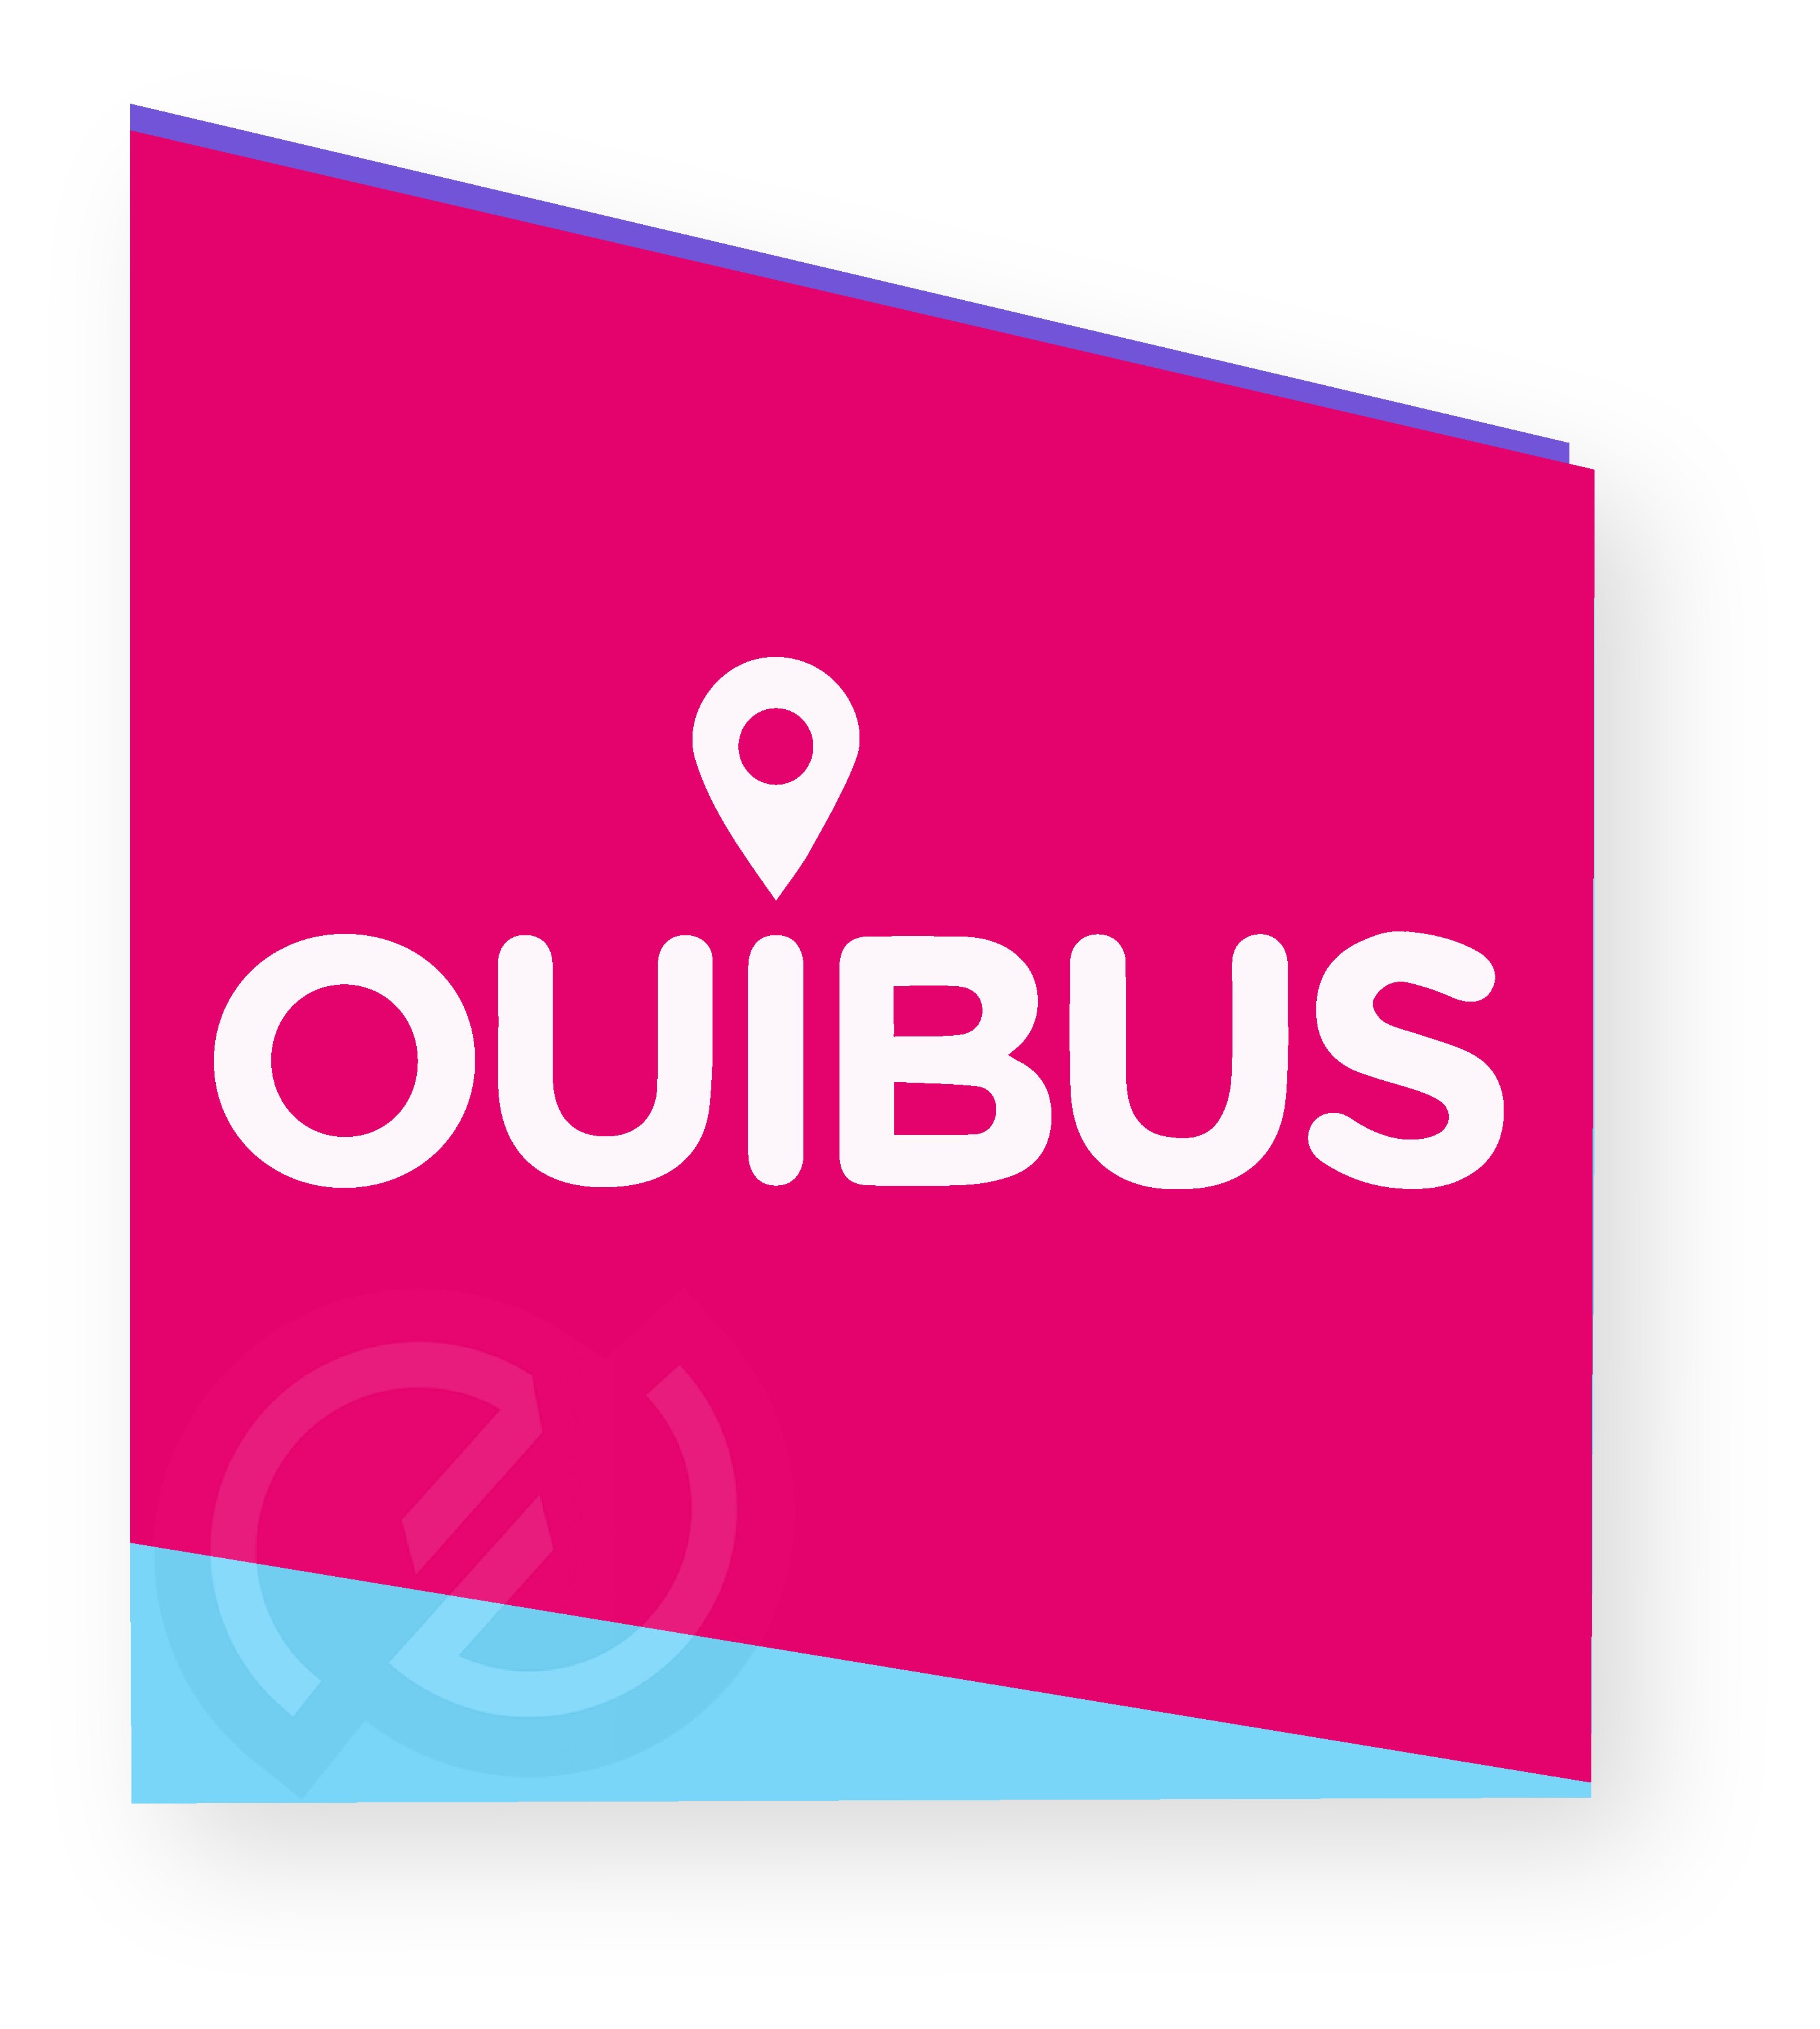 Image logo Ouibus